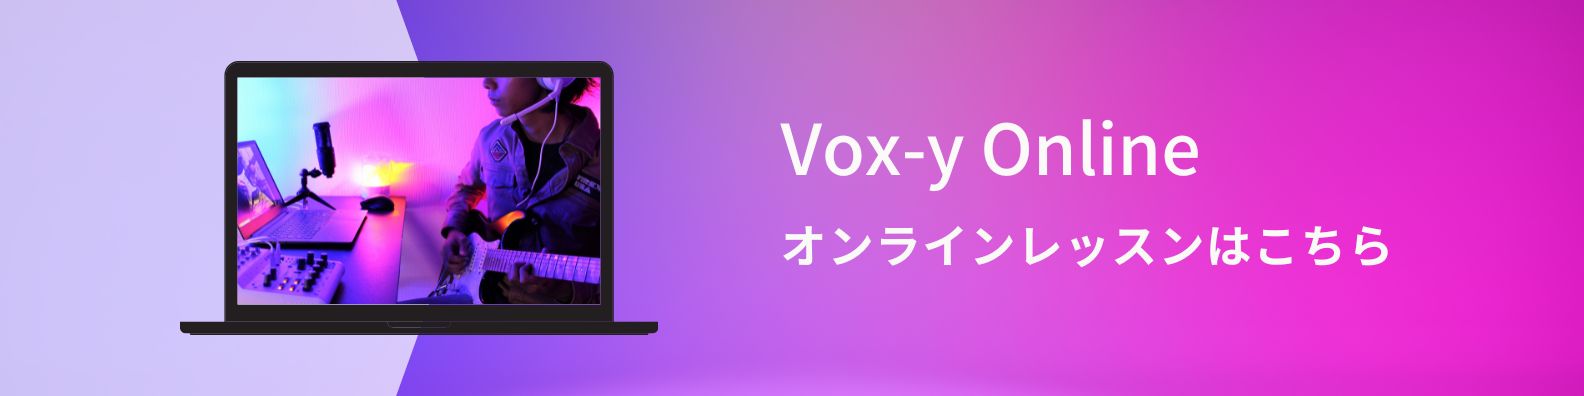 Vox-yオンライン音楽教室 はこちら